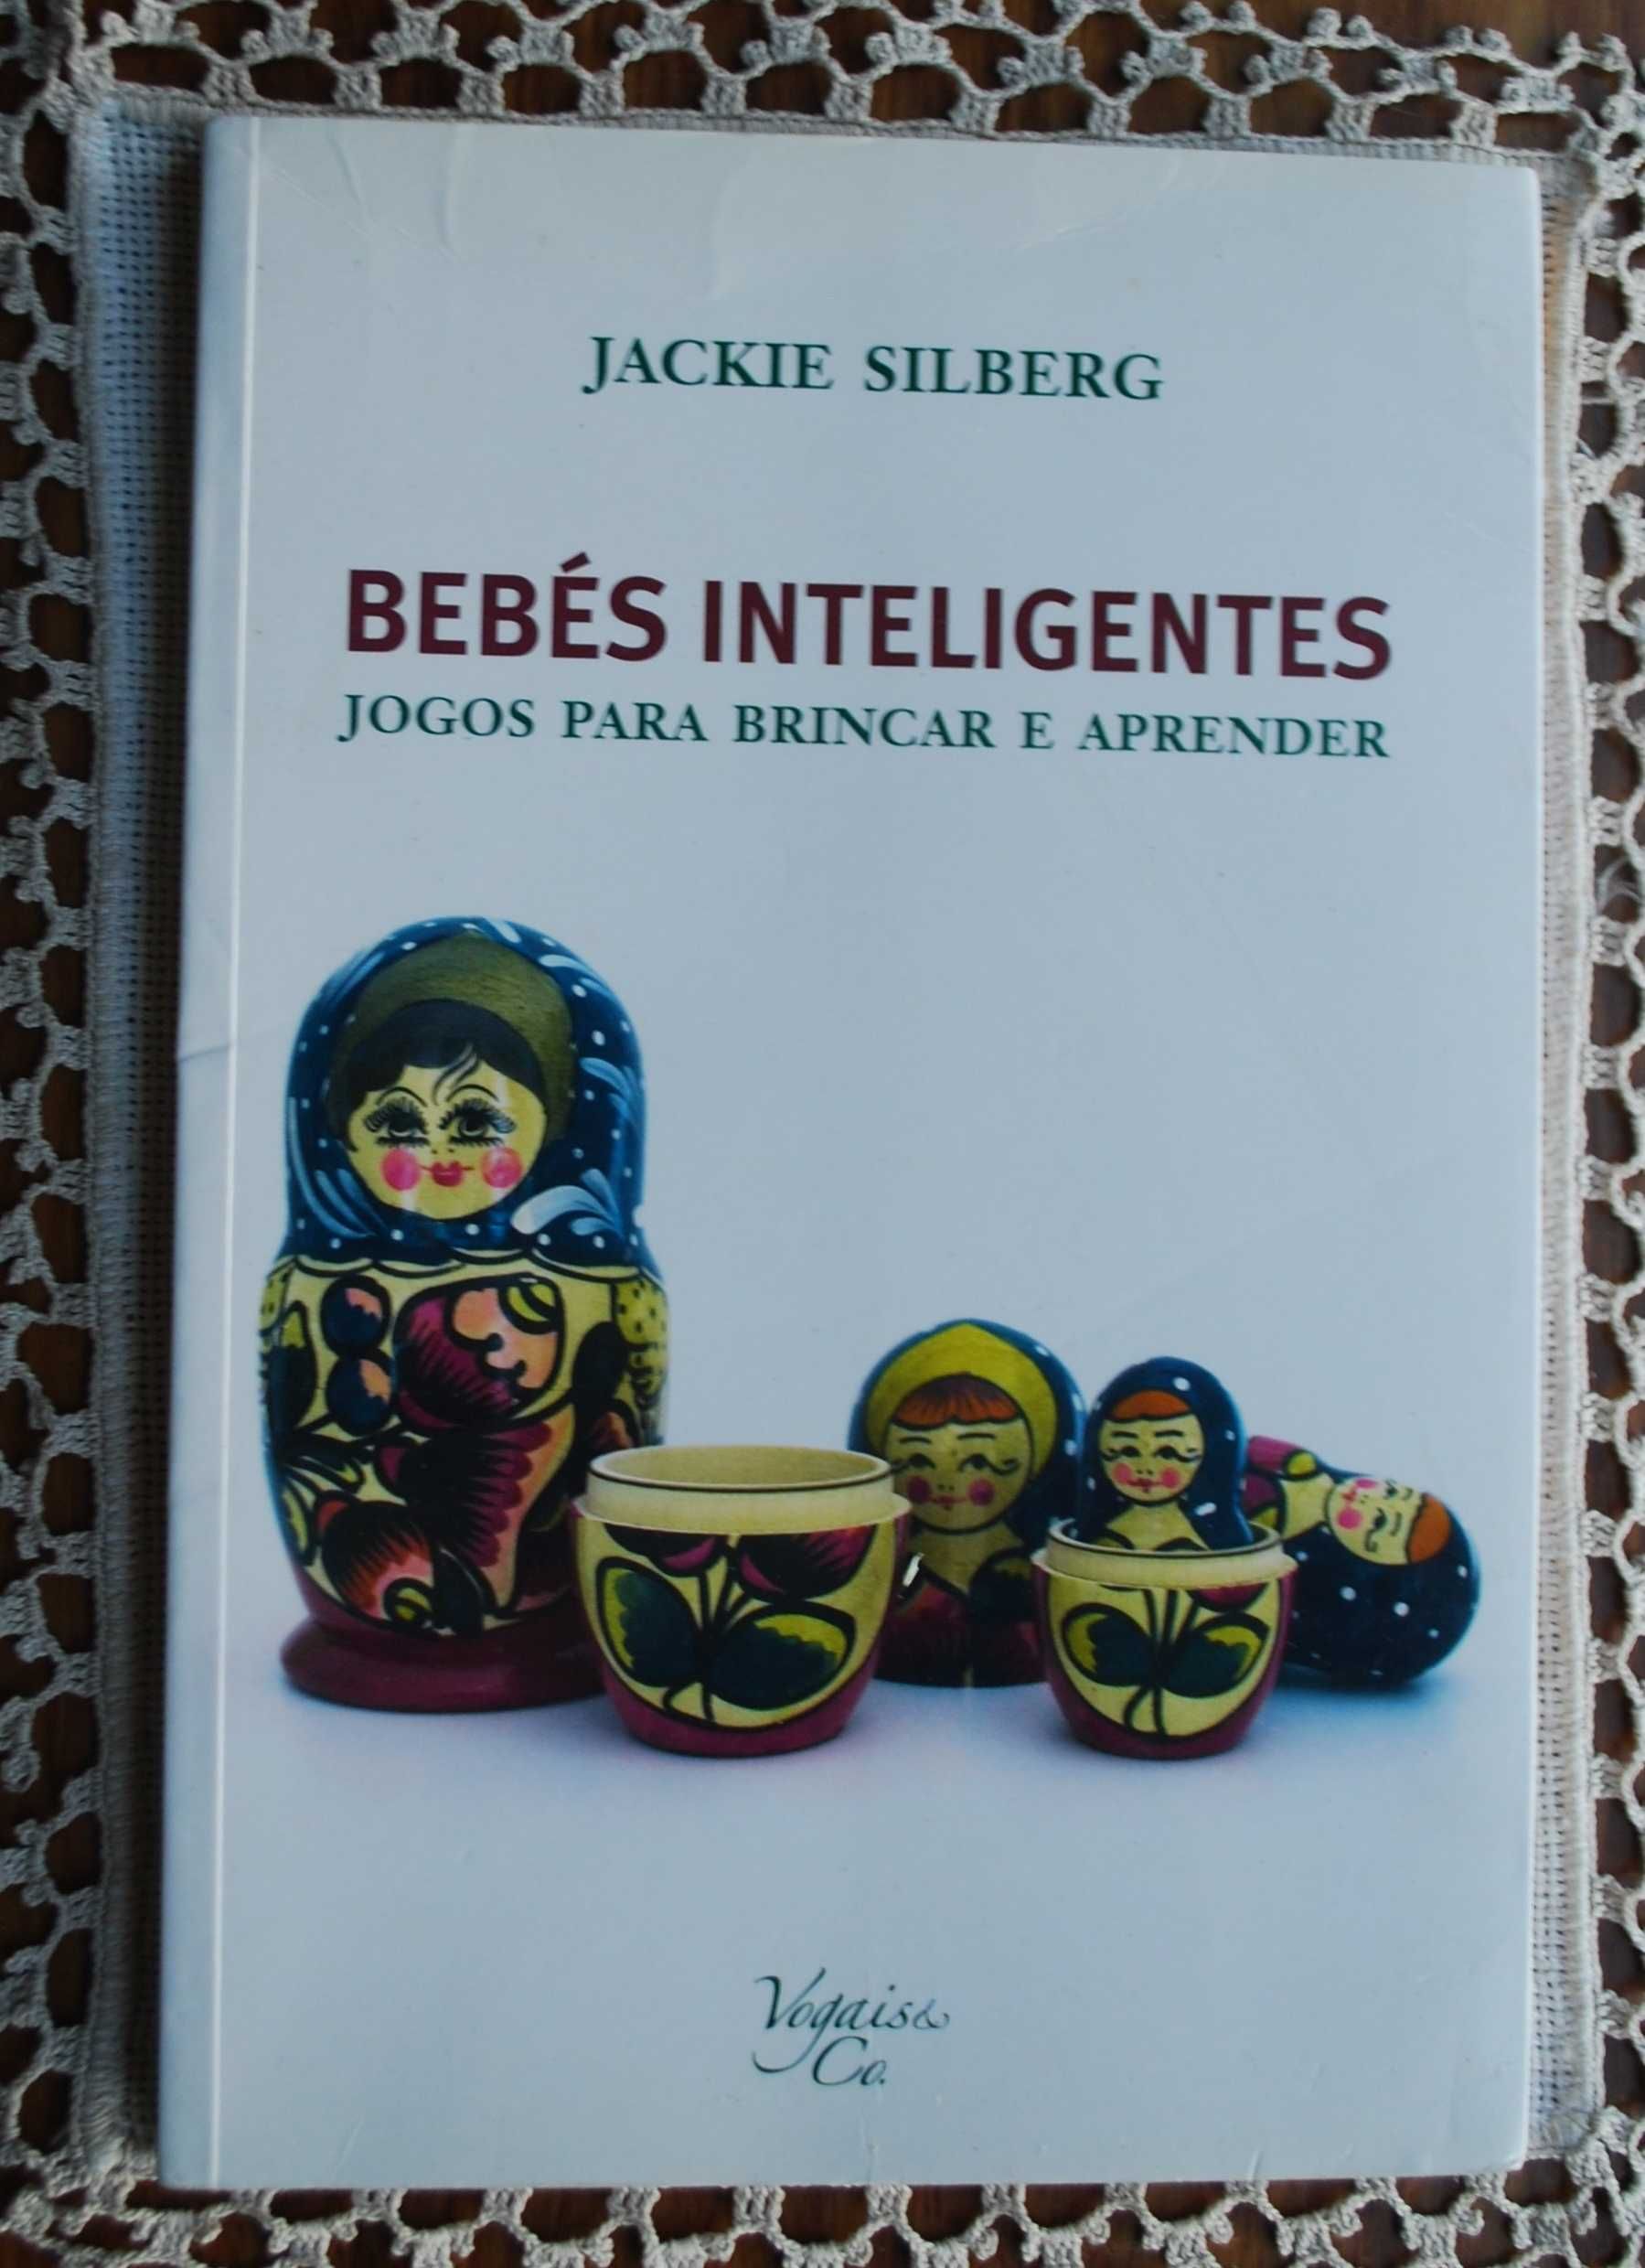 Bebés Inteligentes (Jogos Para Brincar e Aprender) de Jackie Silberg